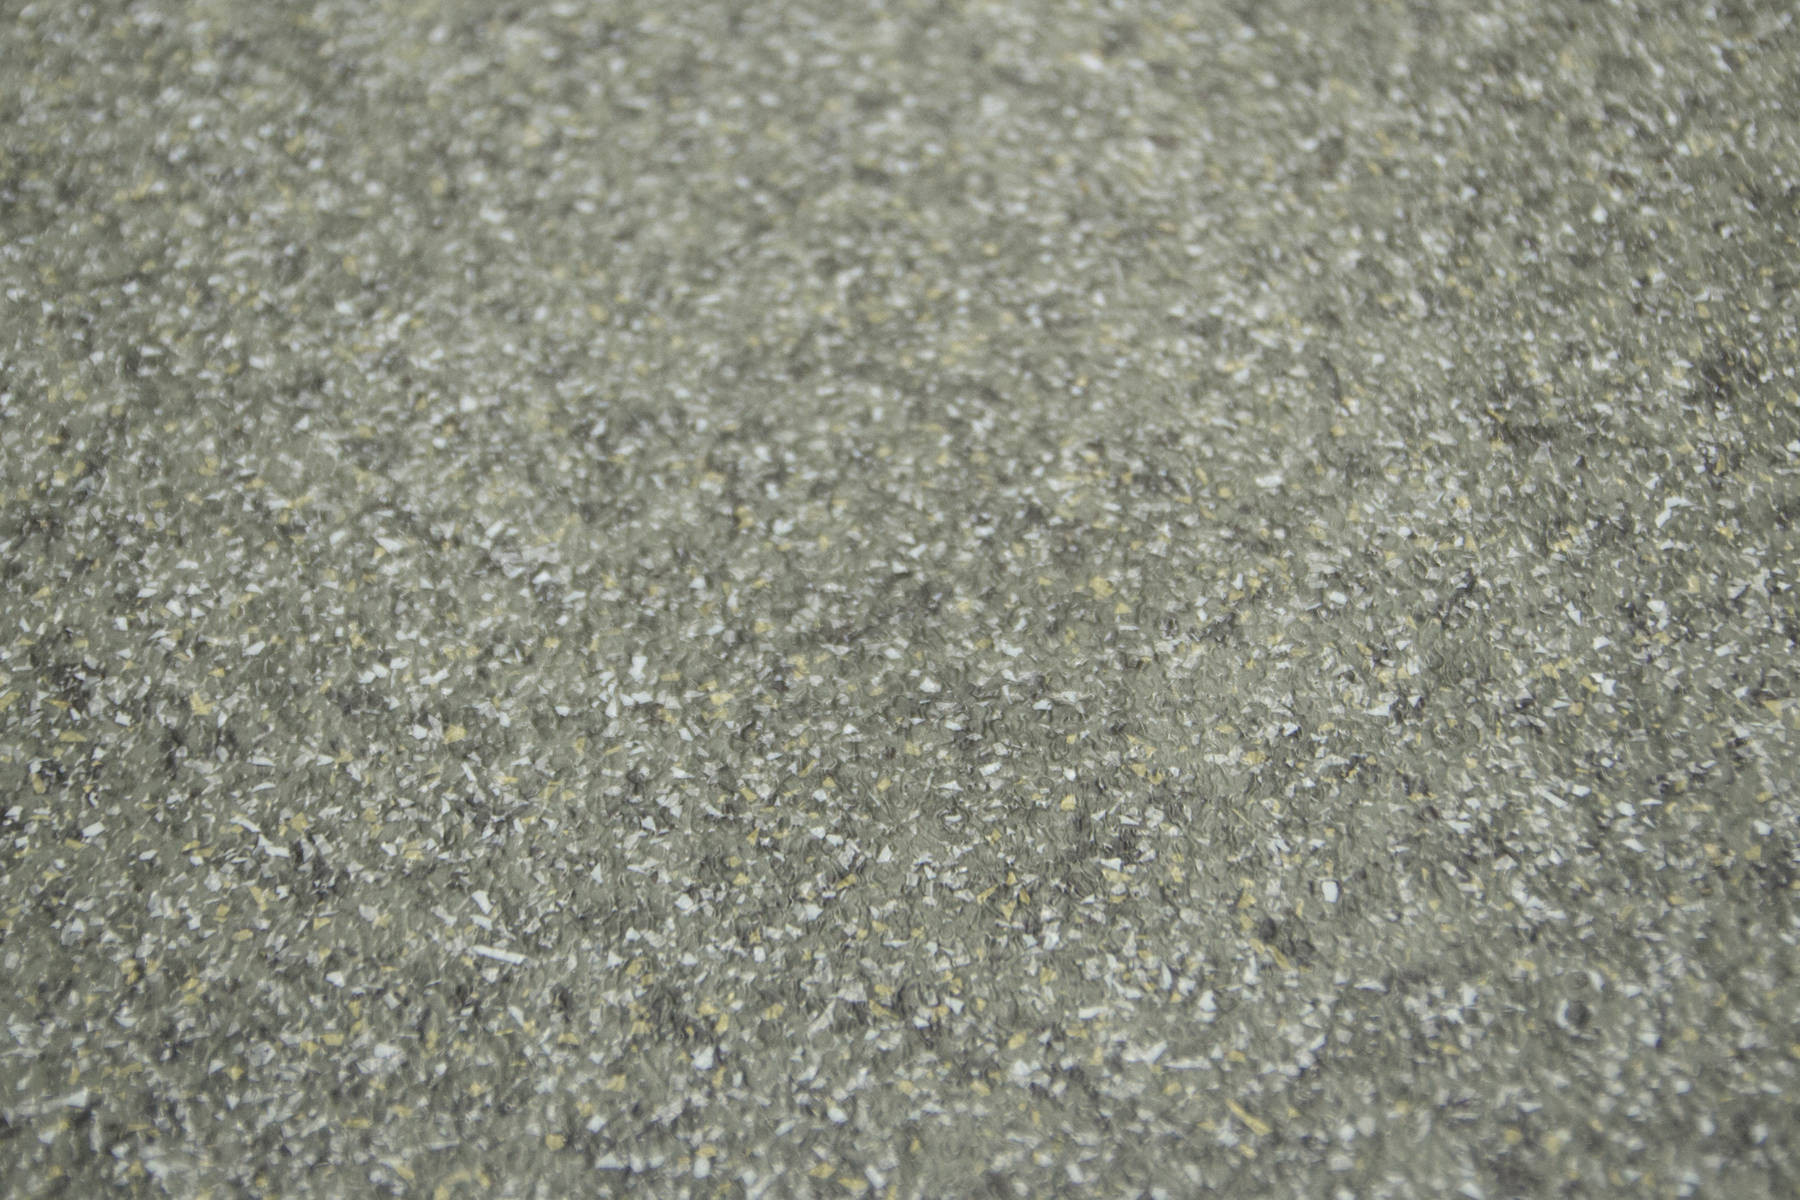 PVC podlaha Activia Earl Grey šedá